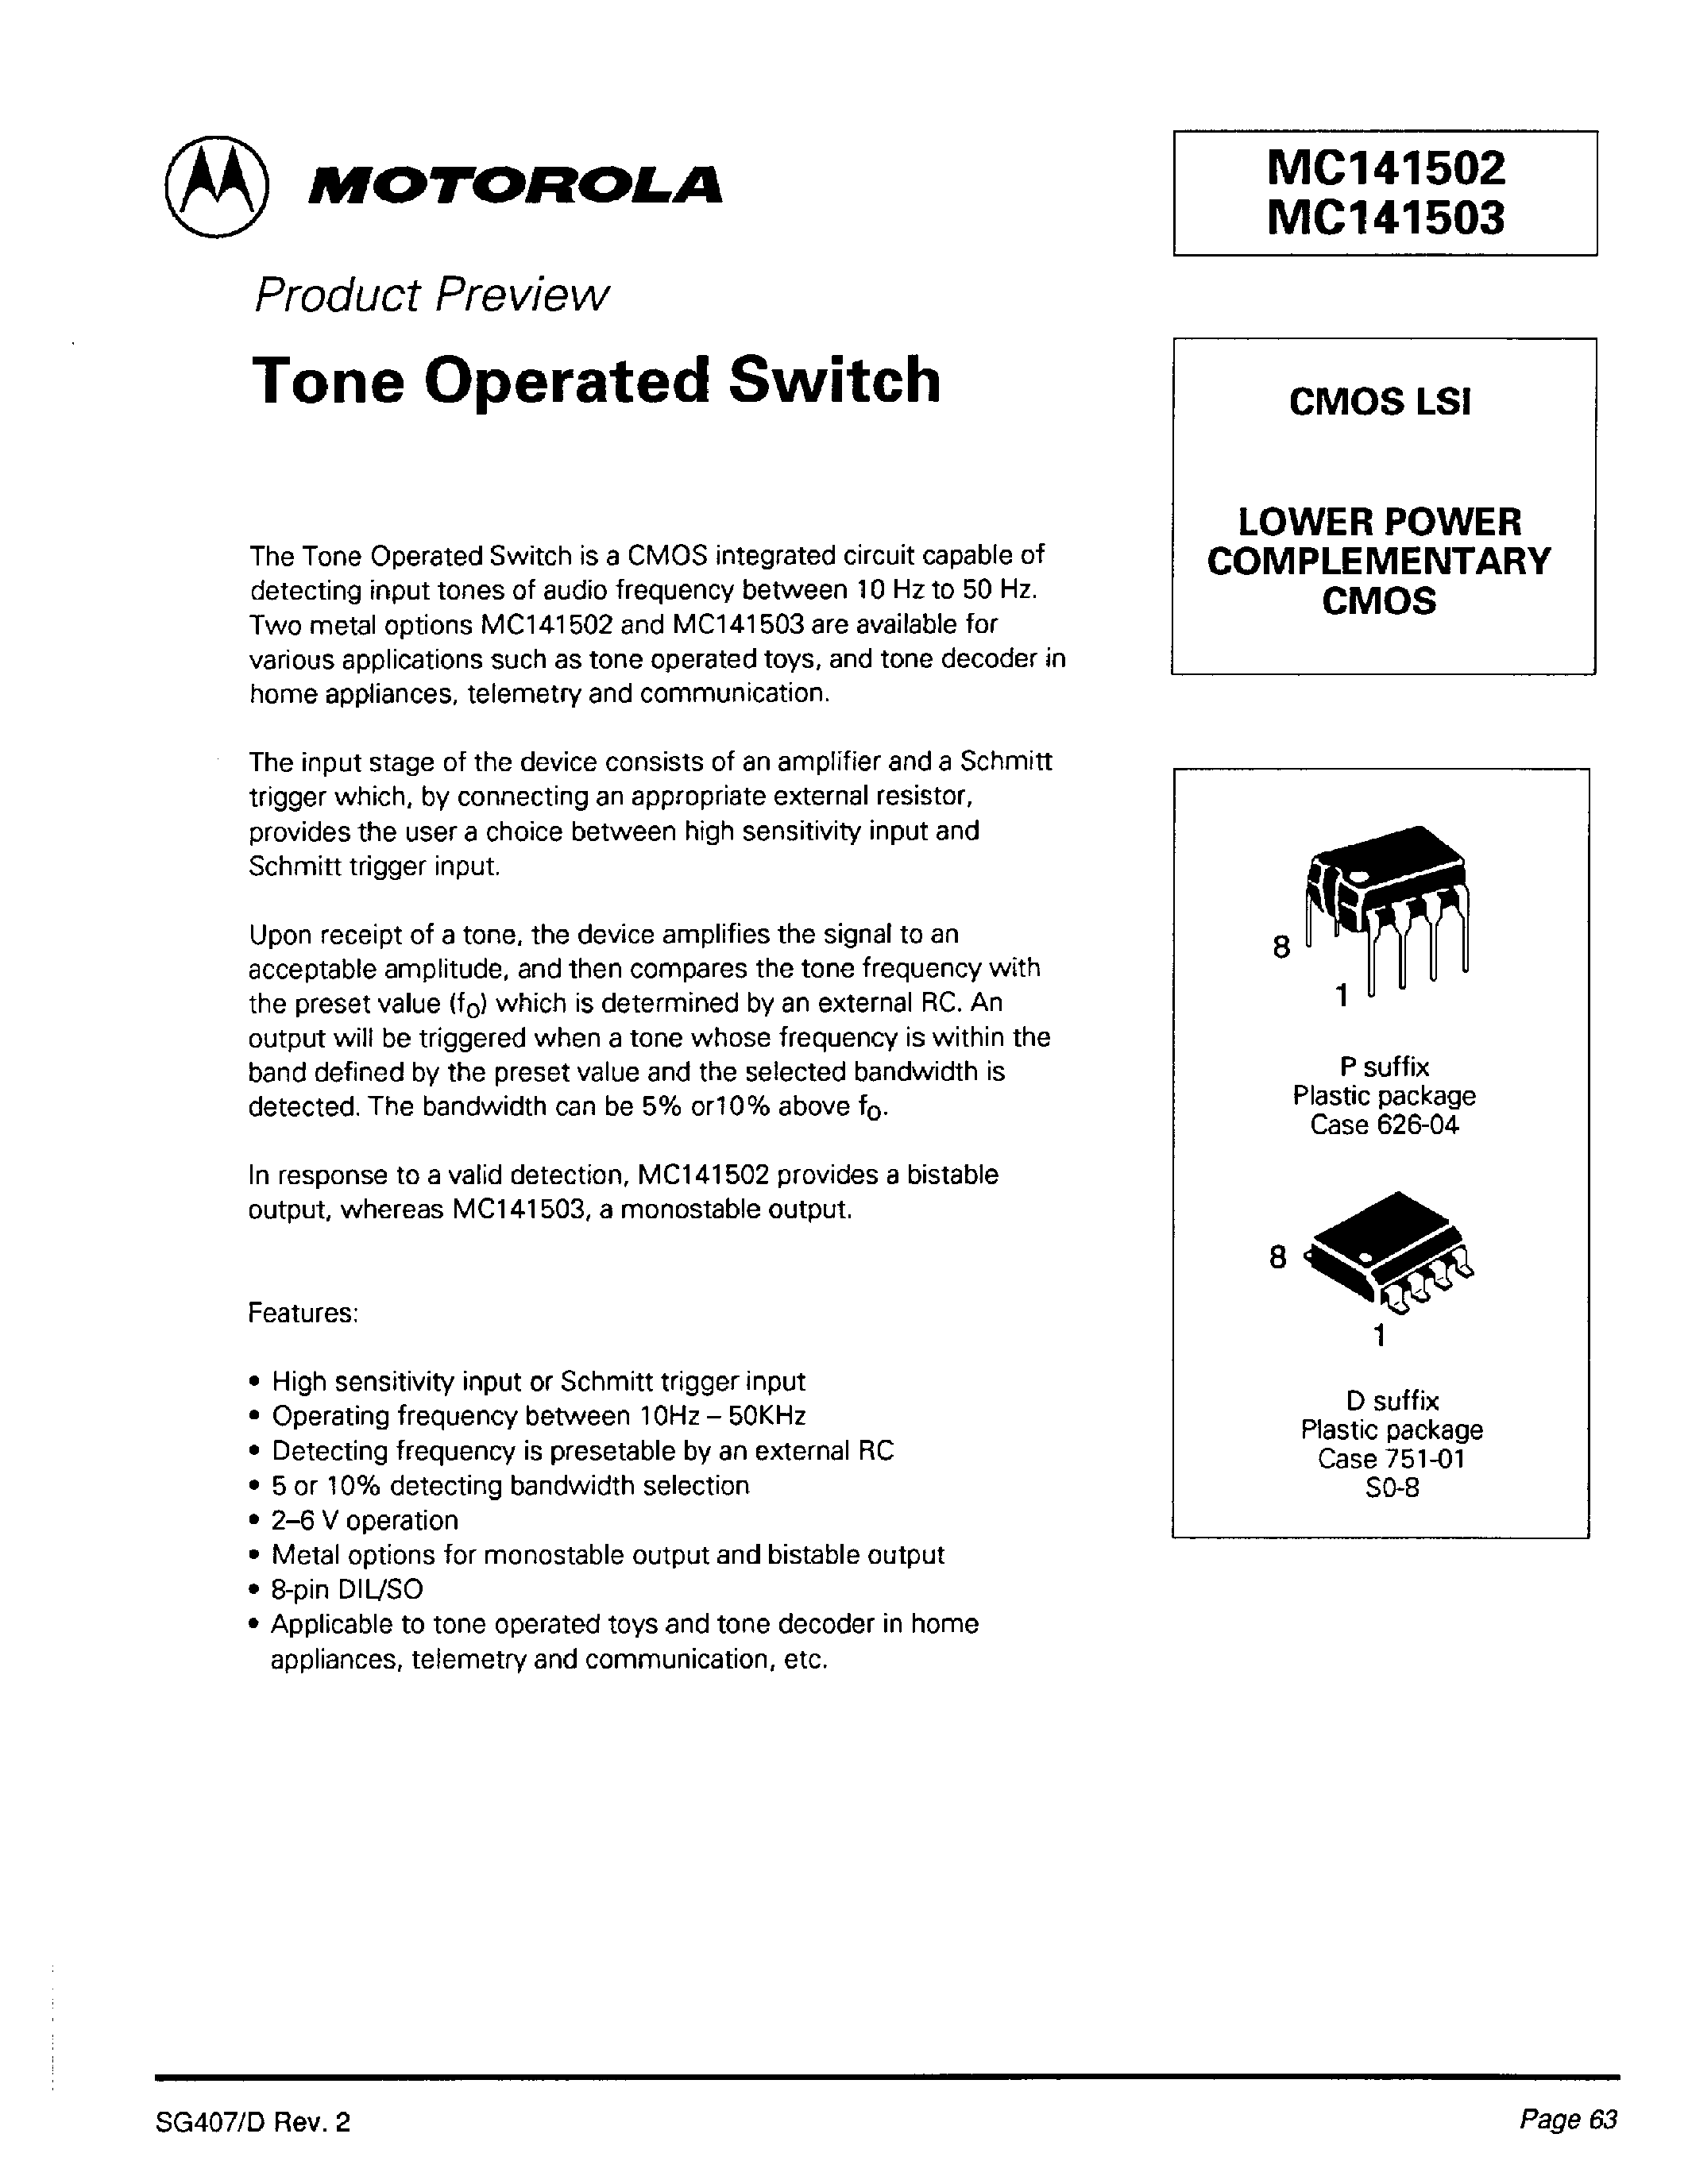 Даташит MC141502D - Tone Operated Switch страница 1